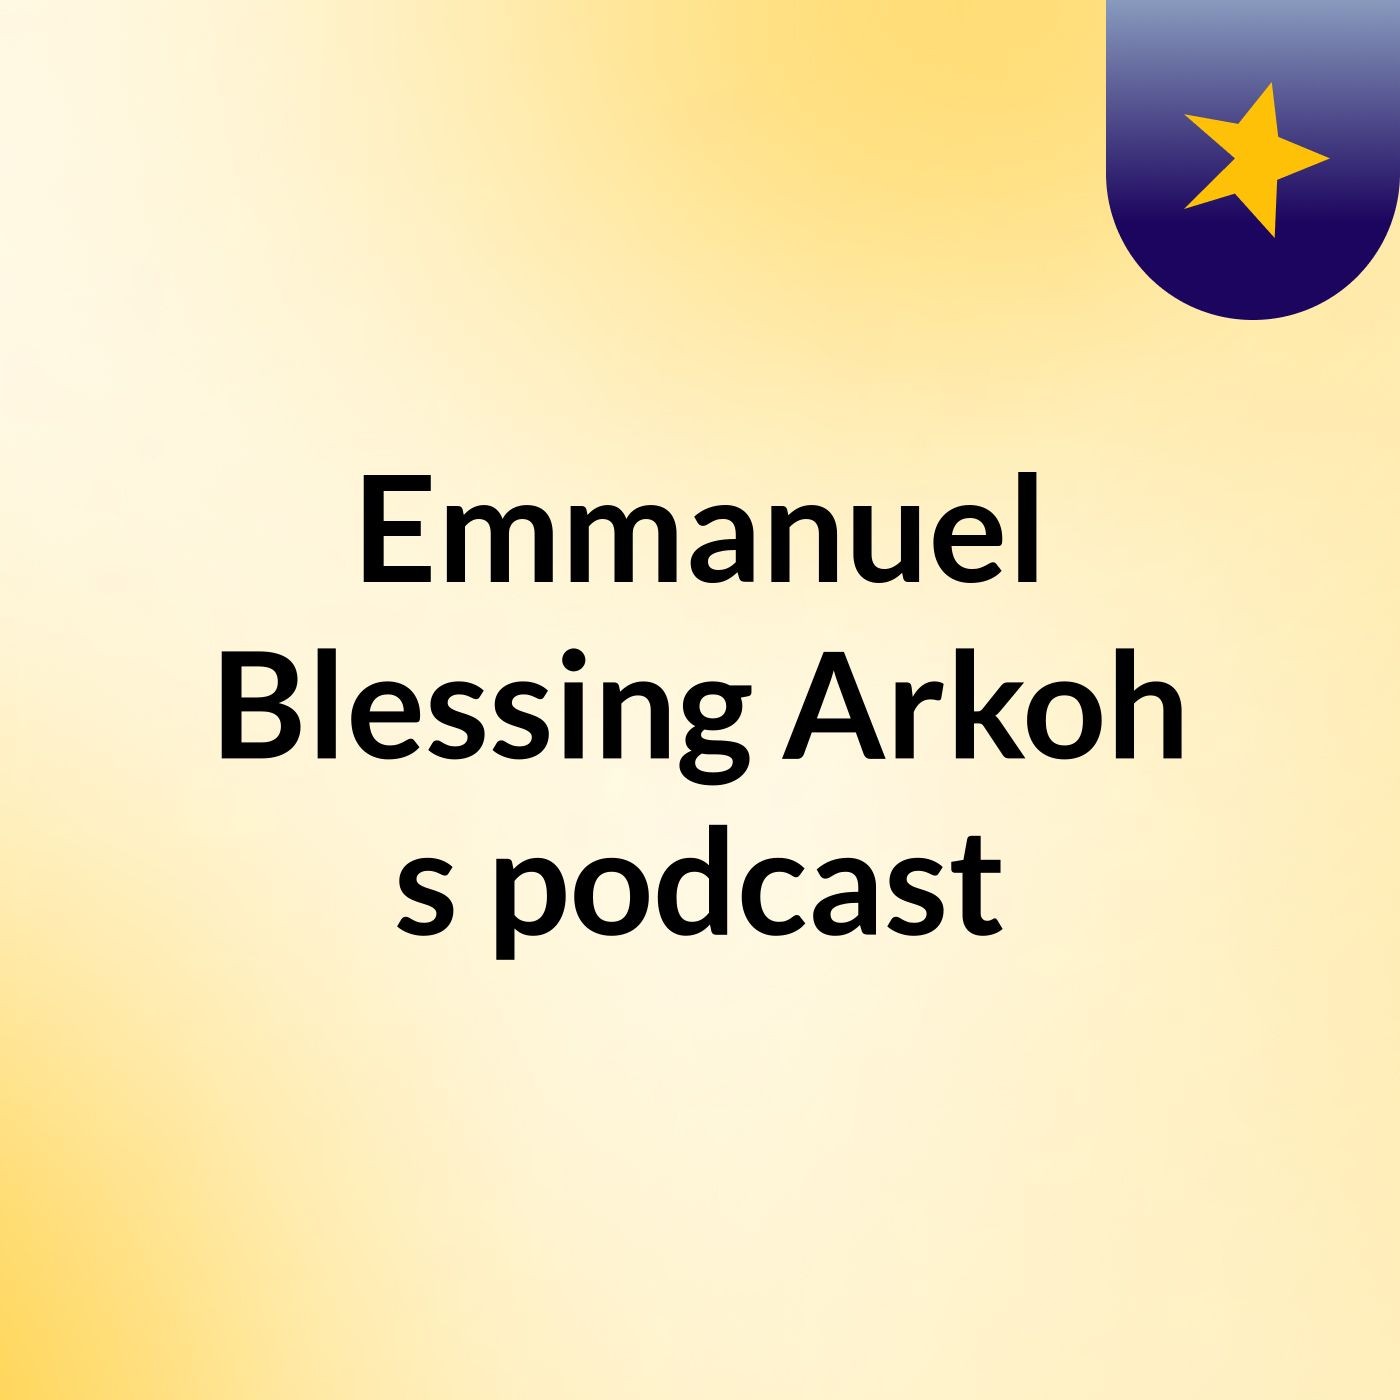 Episode 3 - Emmanuel Blessing Arkoh's podcast